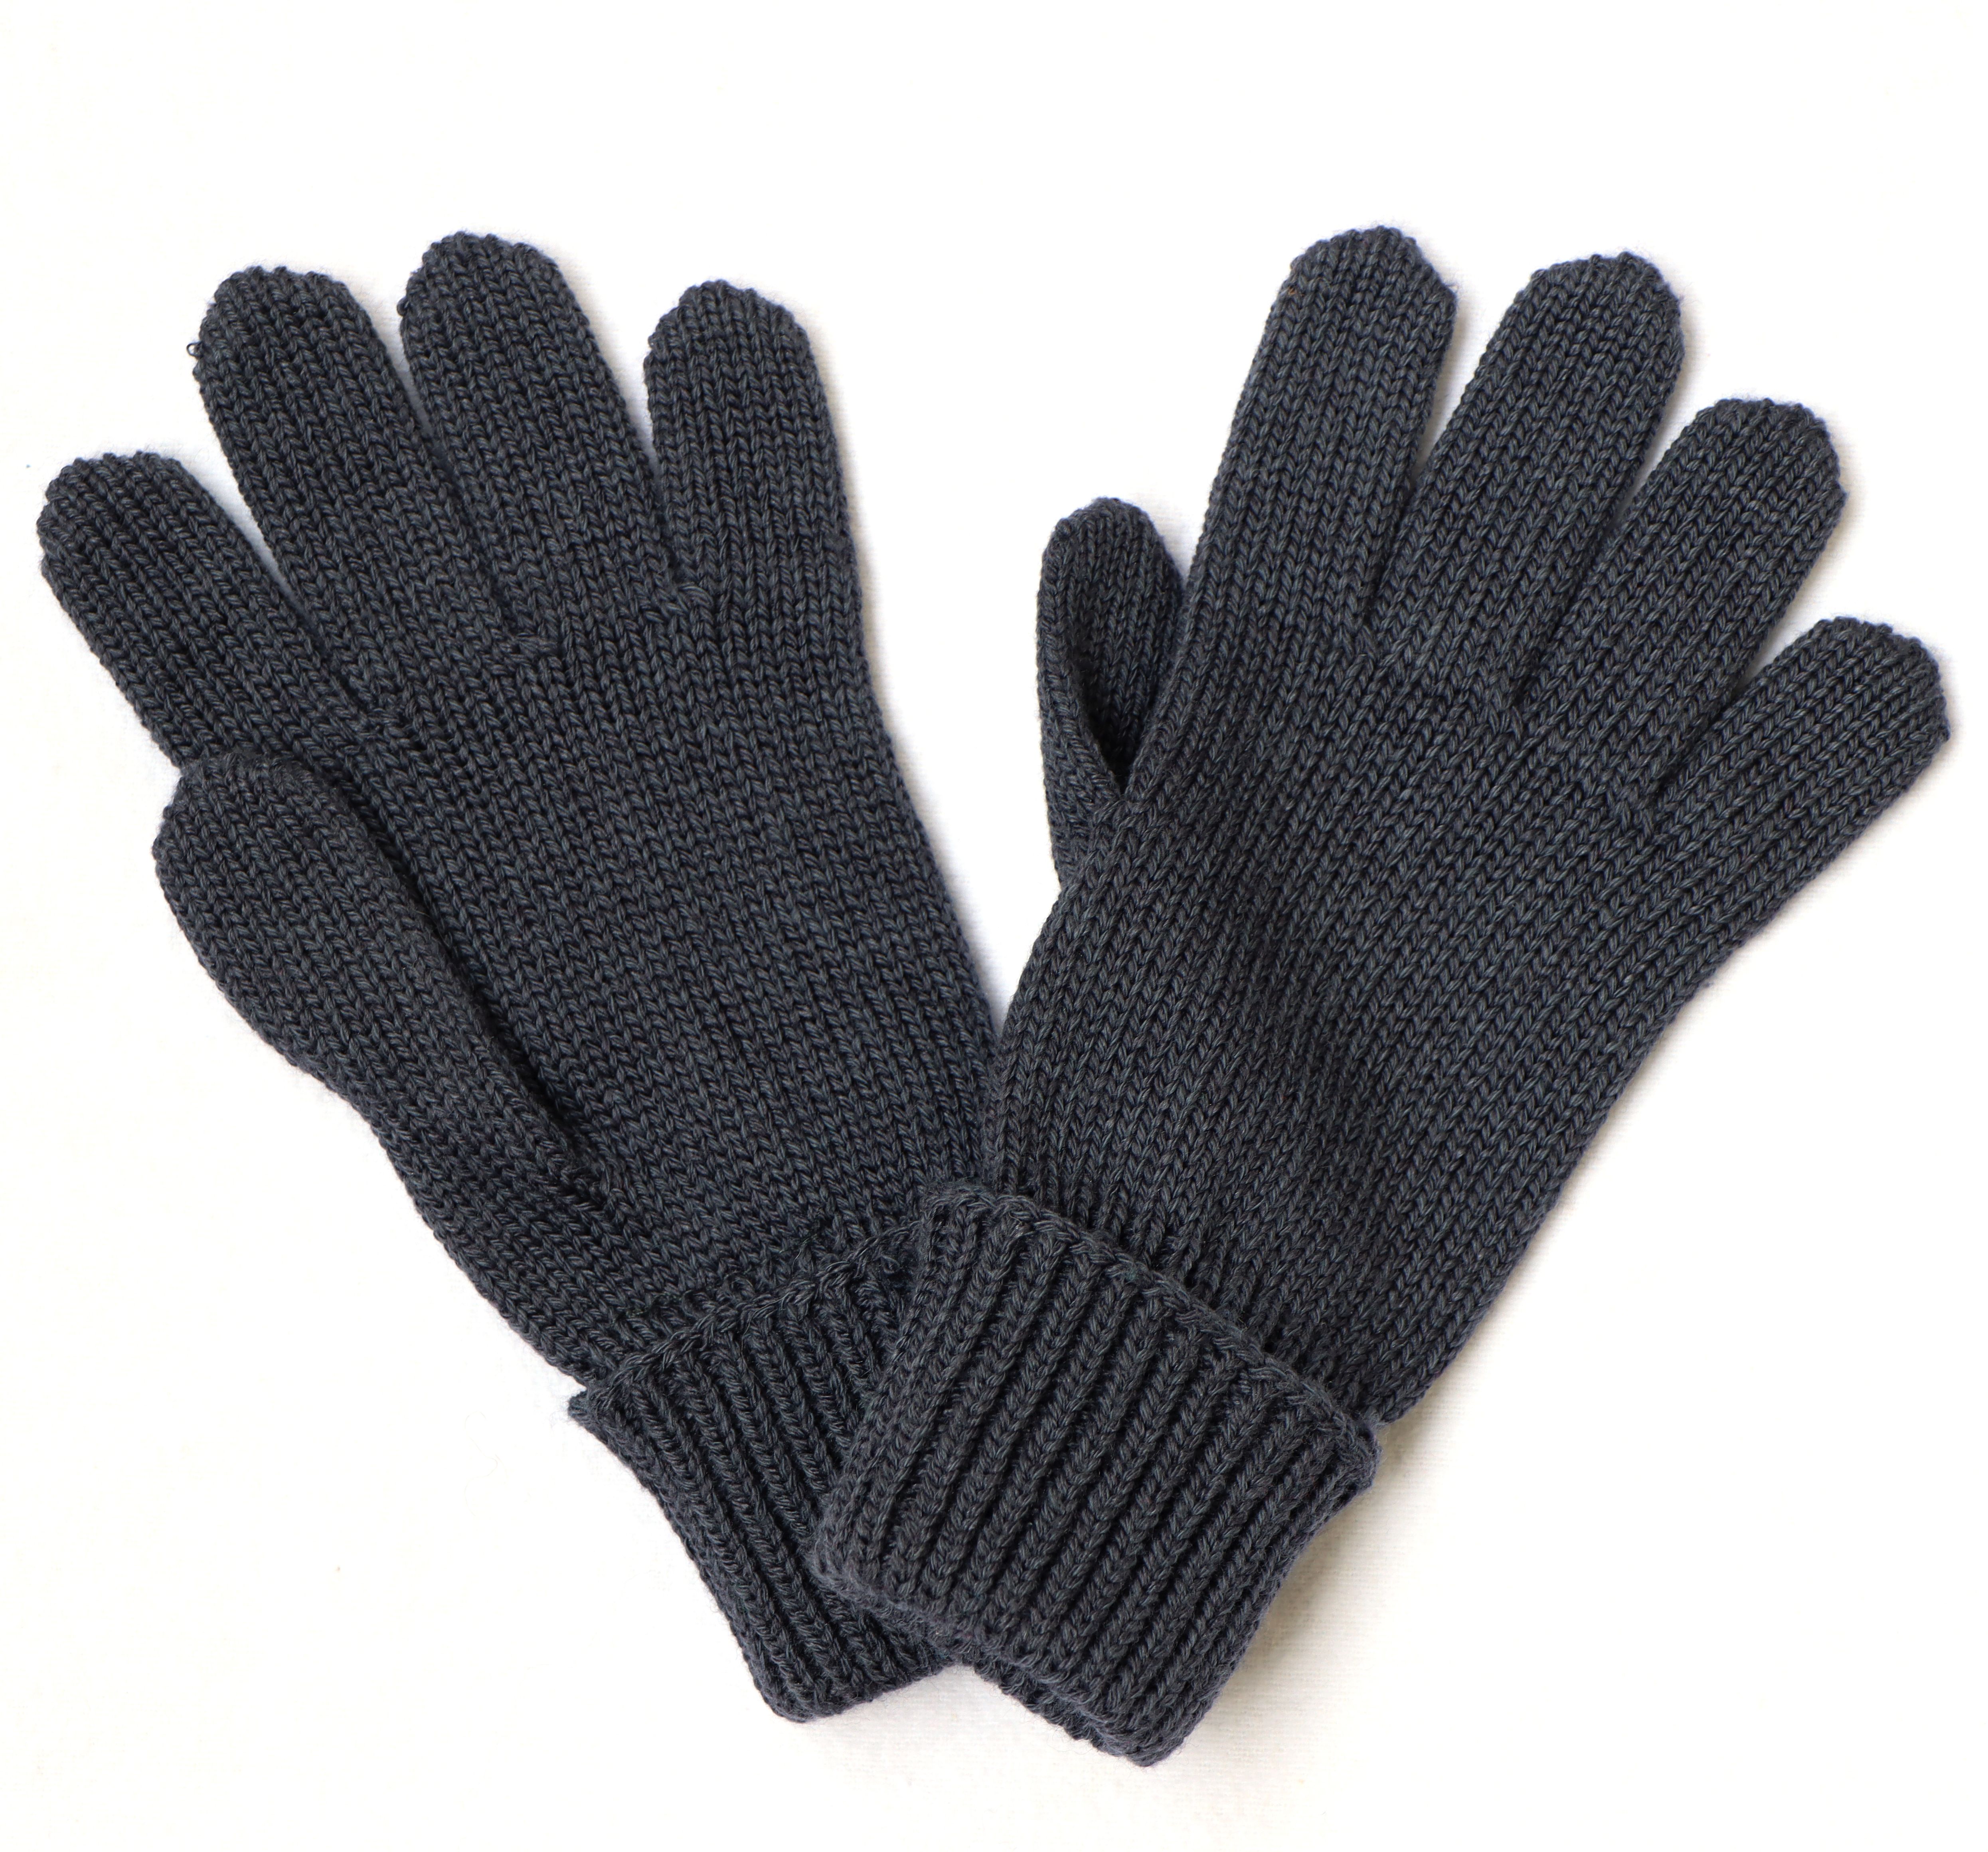 Blaugraue Kinder-Handschuhe mit Wolle